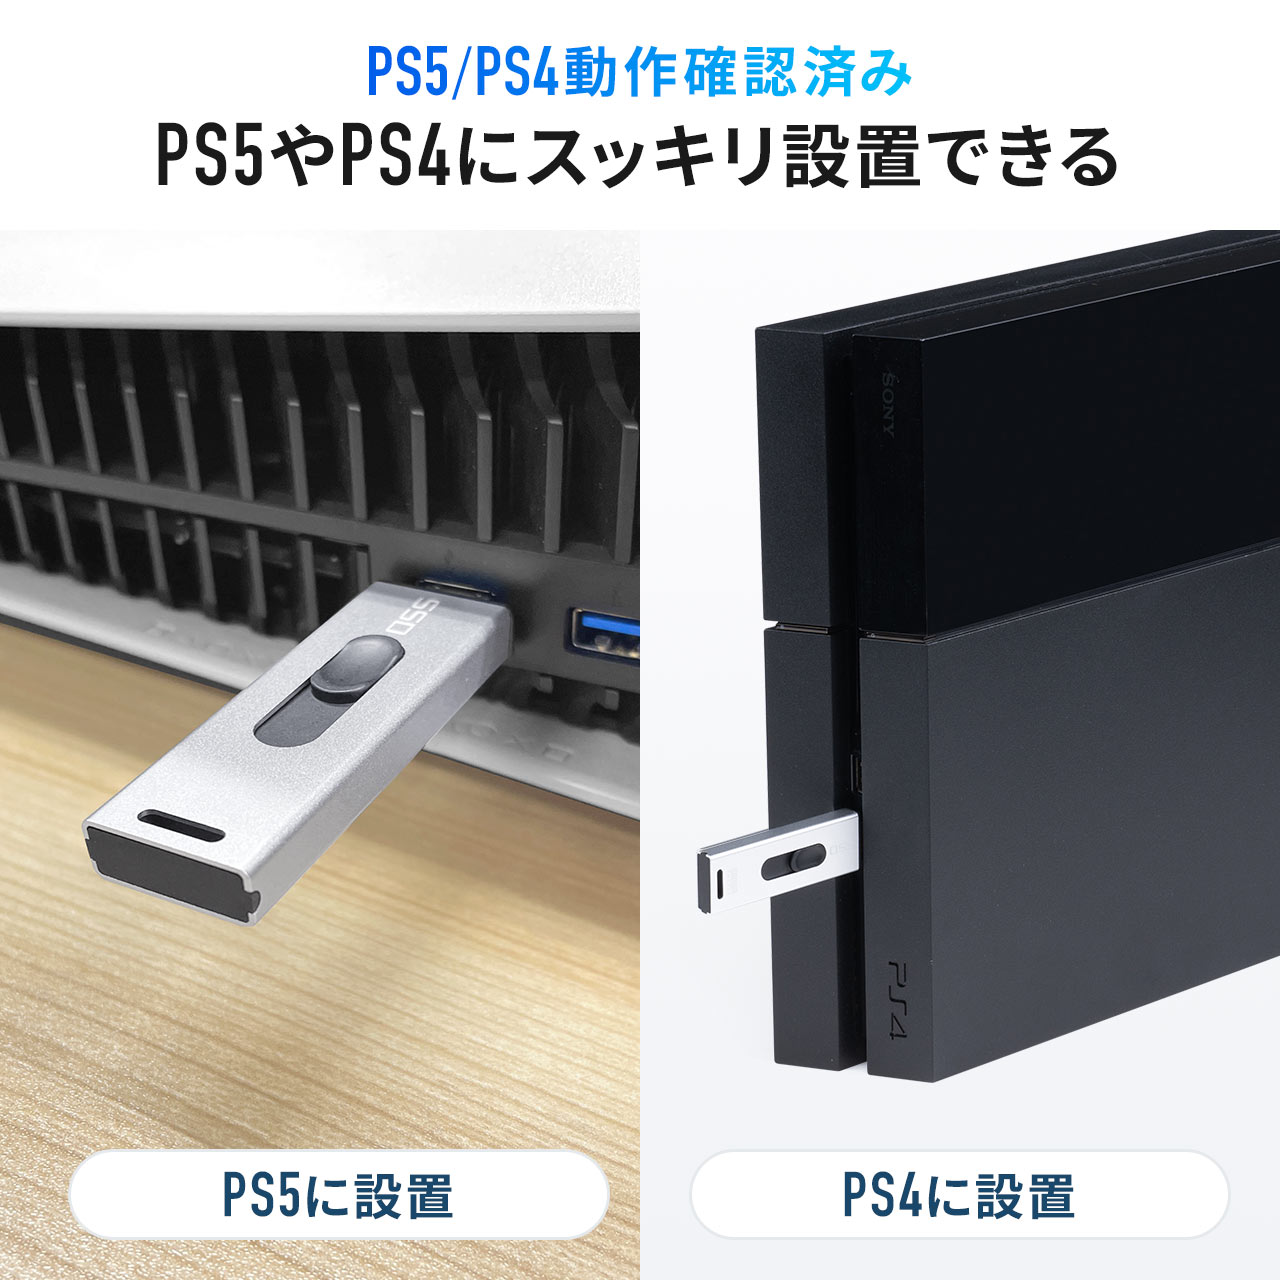 スティック型SSD 1TB 外付け ポータブルSSD テレビ録画 TV録画用 超